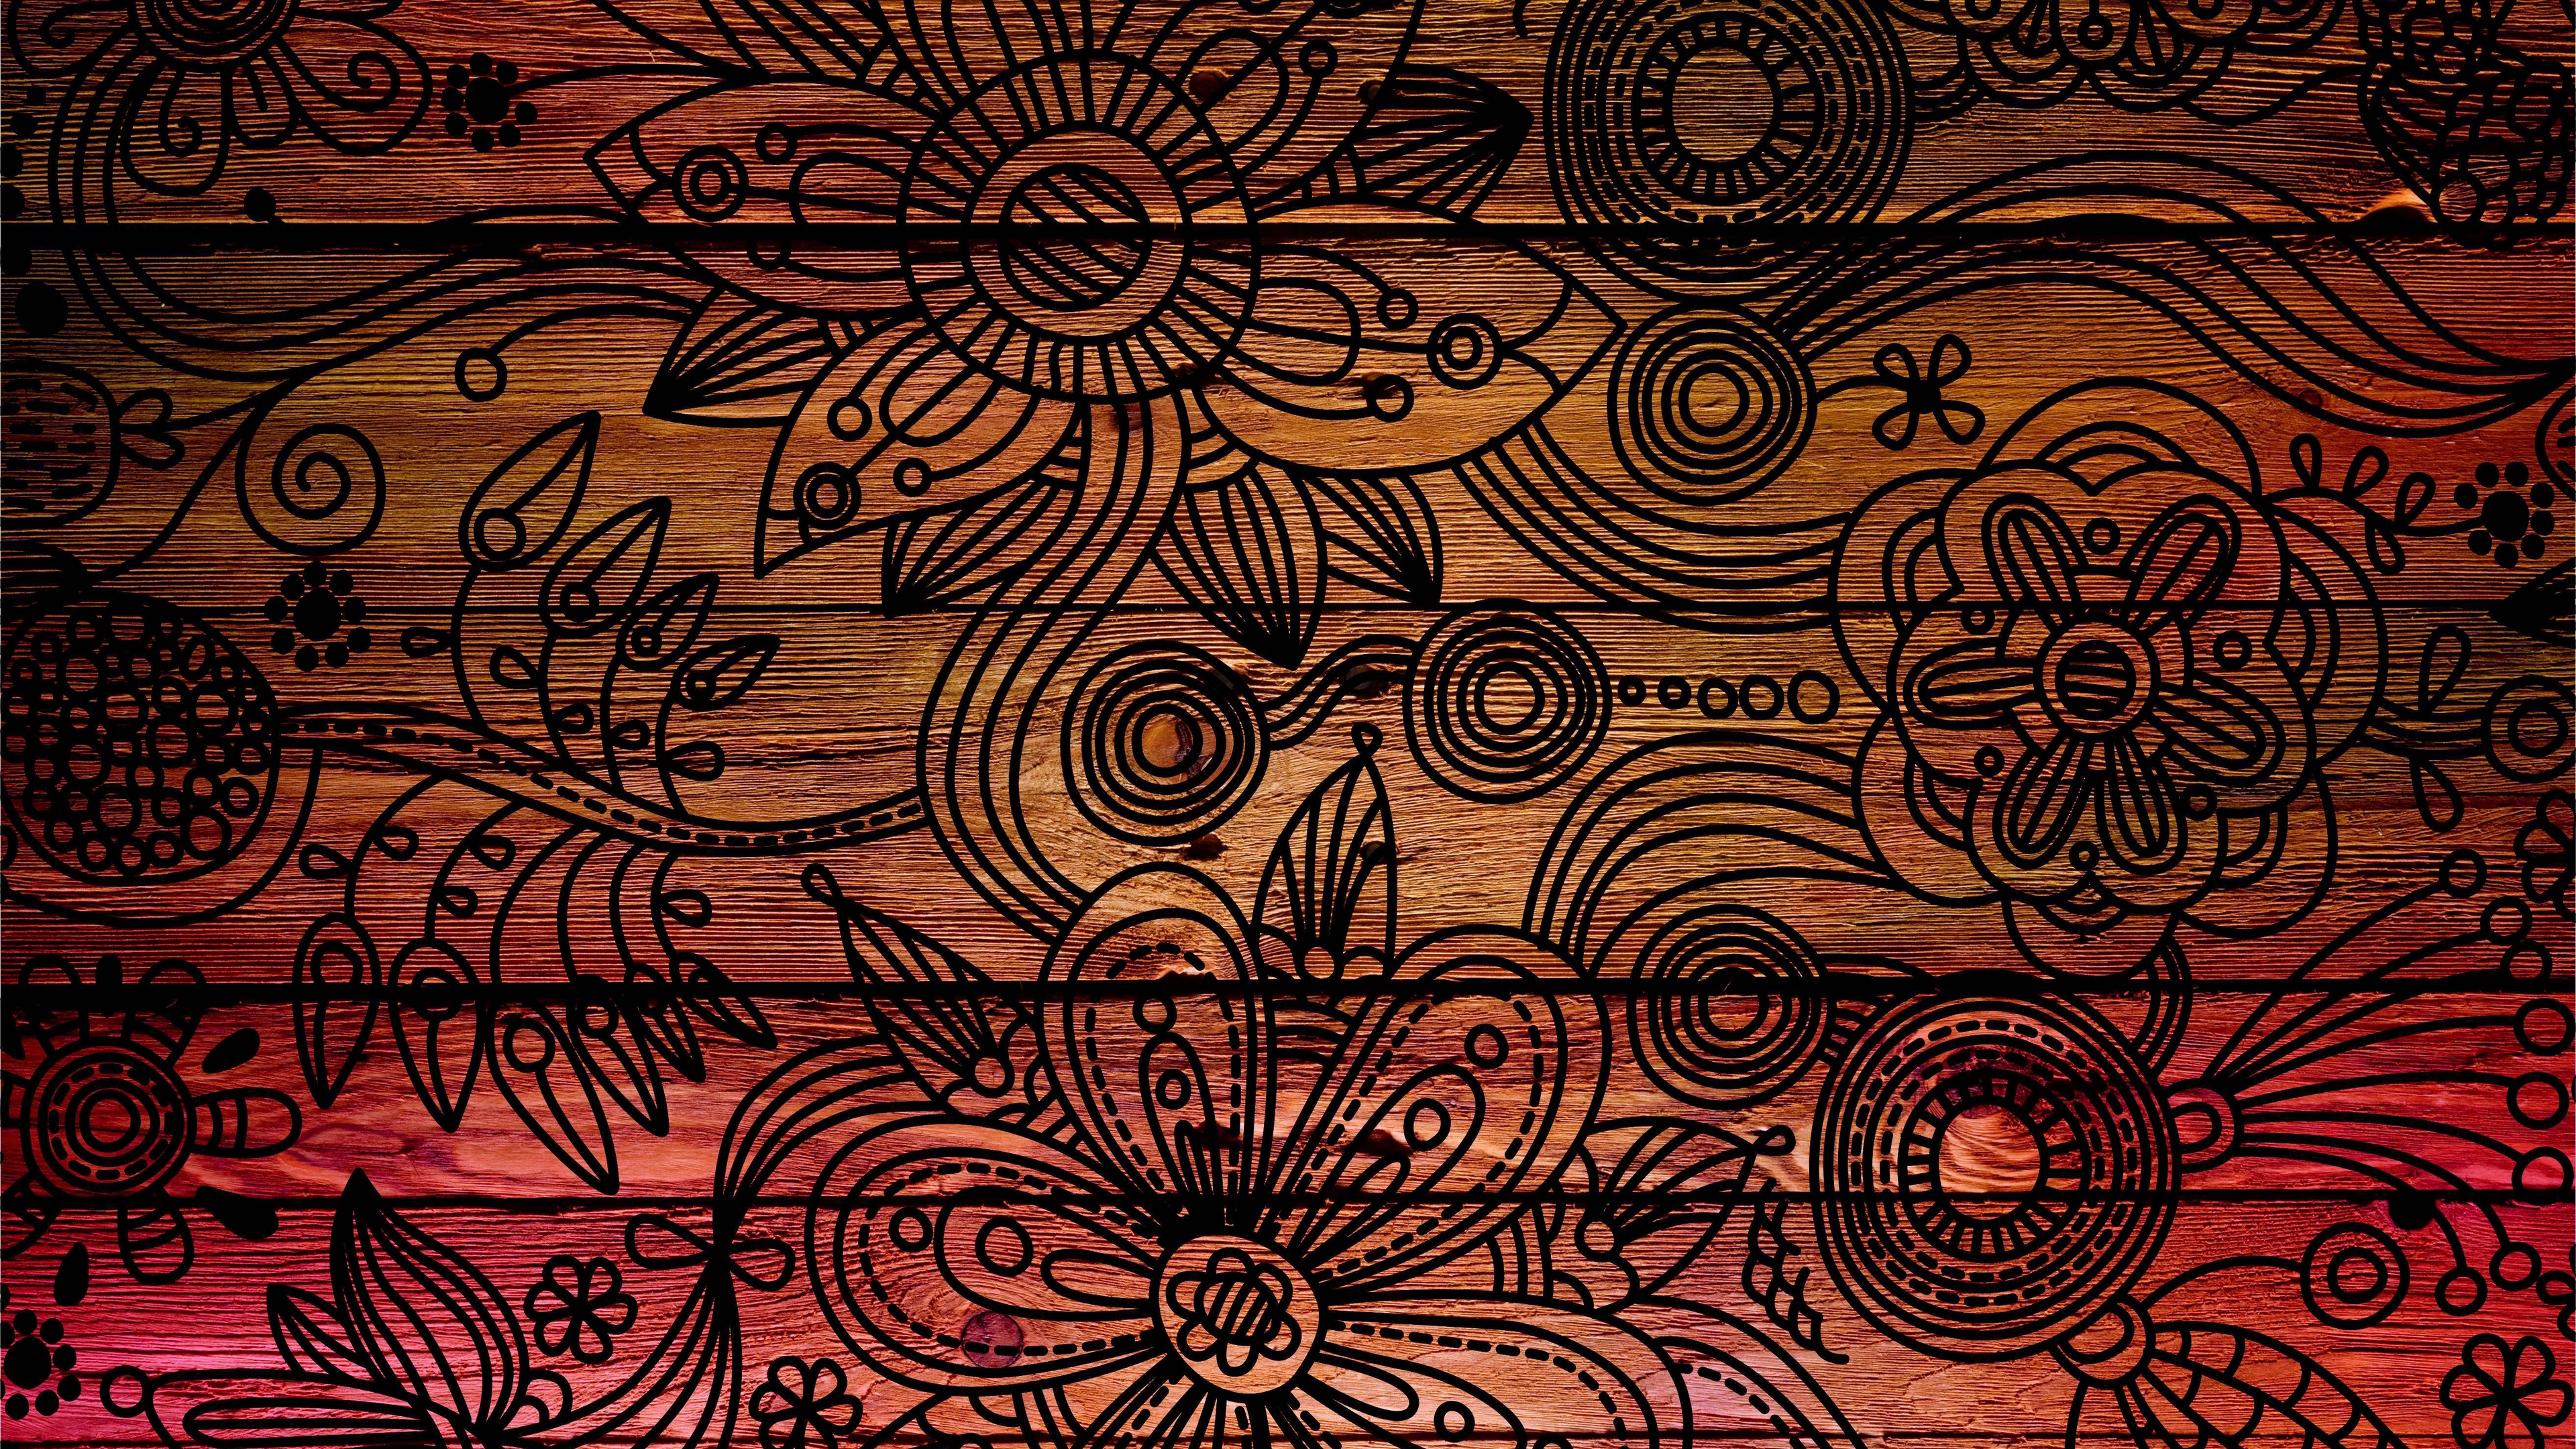 Đam mê nghệ thuật gỗ? Hãy đắm chìm trong vẻ đẹp hoàn hảo của hình nền 4K gỗ vân đẹp. Hình ảnh sắc nét, chân thực và bắt mắt sẽ mang đến cho bạn những trải nghiệm đương đại nhất về nghệ thuật gỗ.